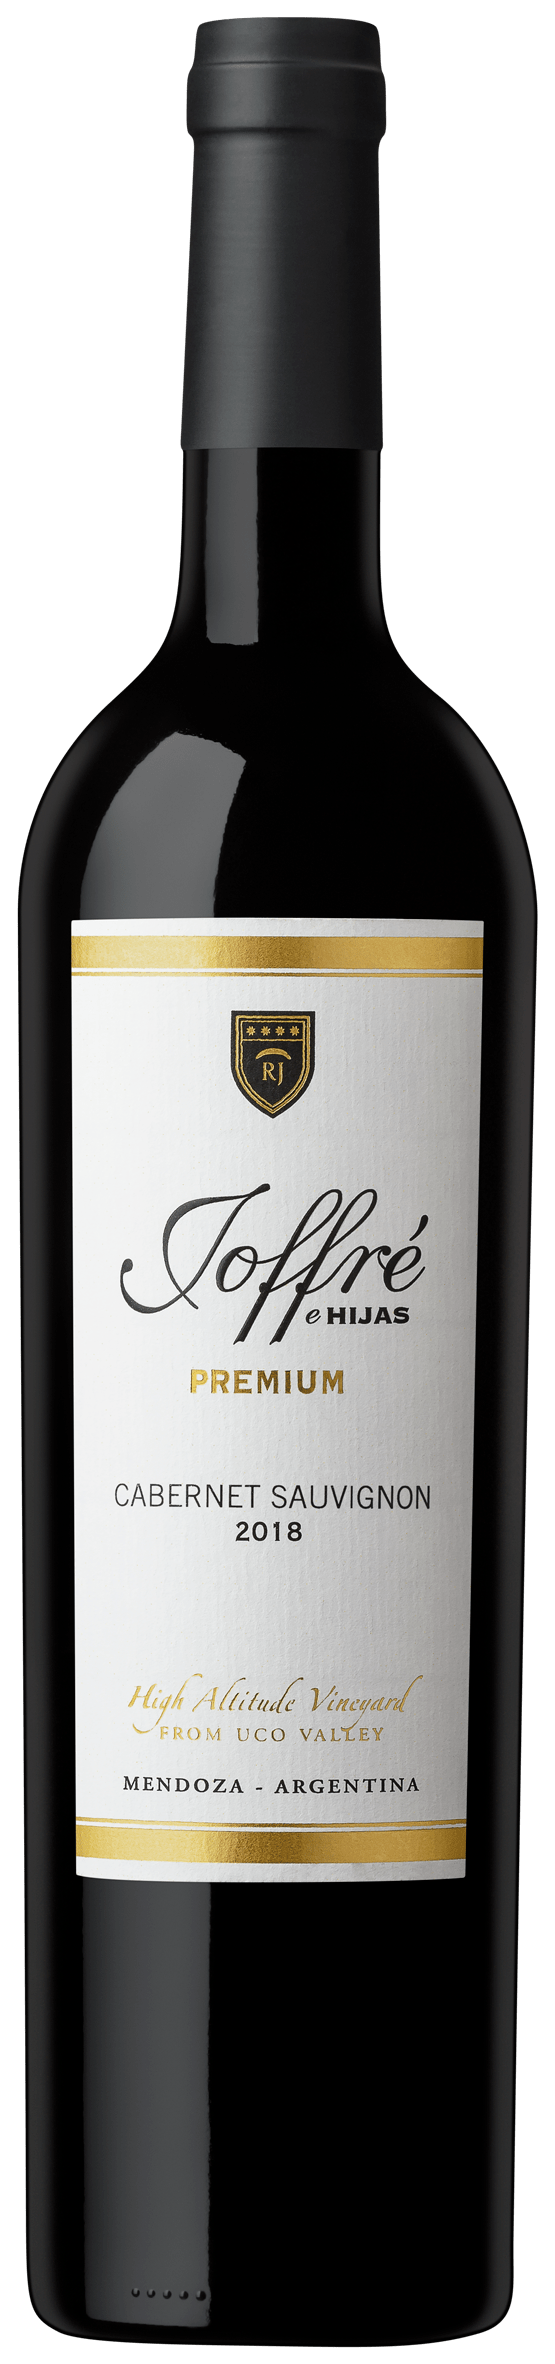 Joffre e Hijas Premium Cabernet Sauvignon 2018